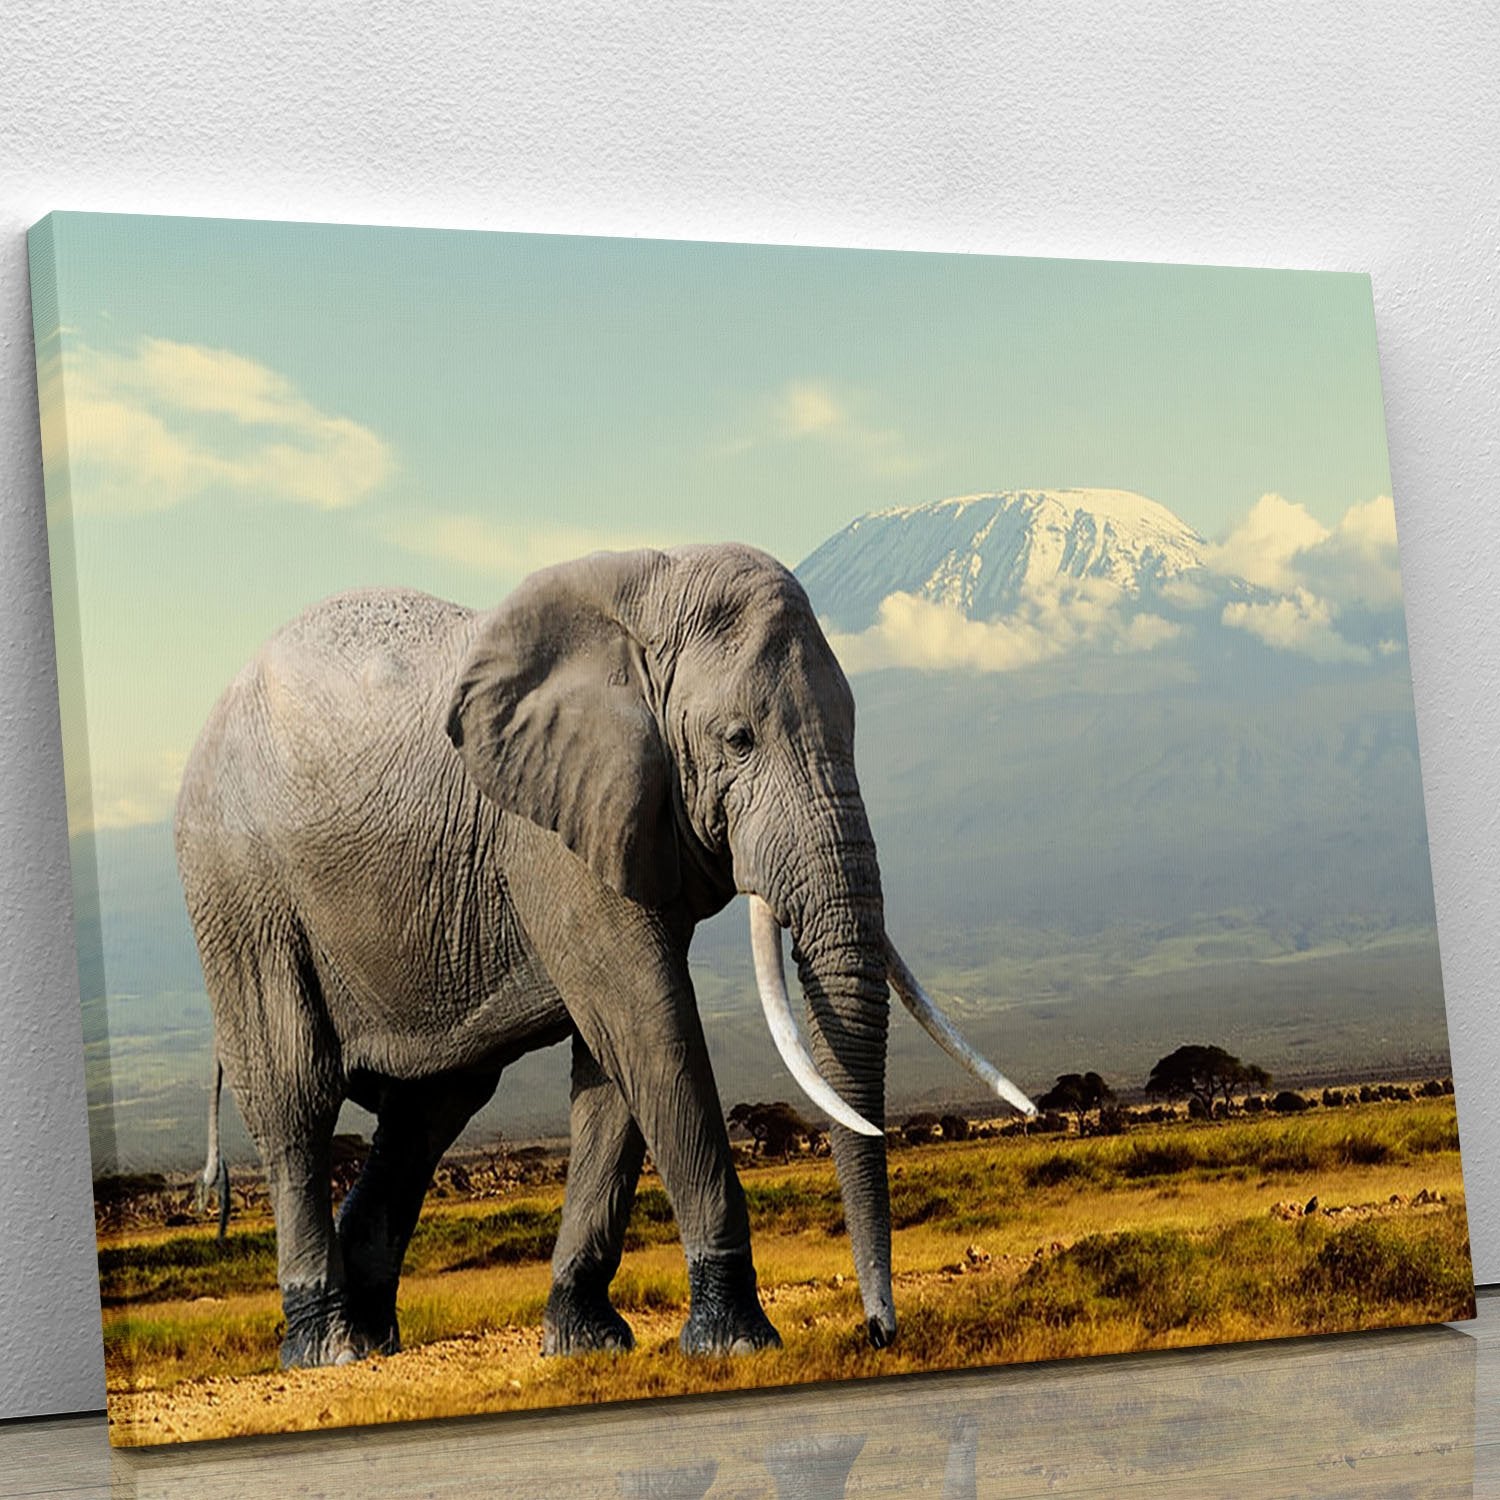 Elephant on Kilimajaro mount Canvas Print or Poster